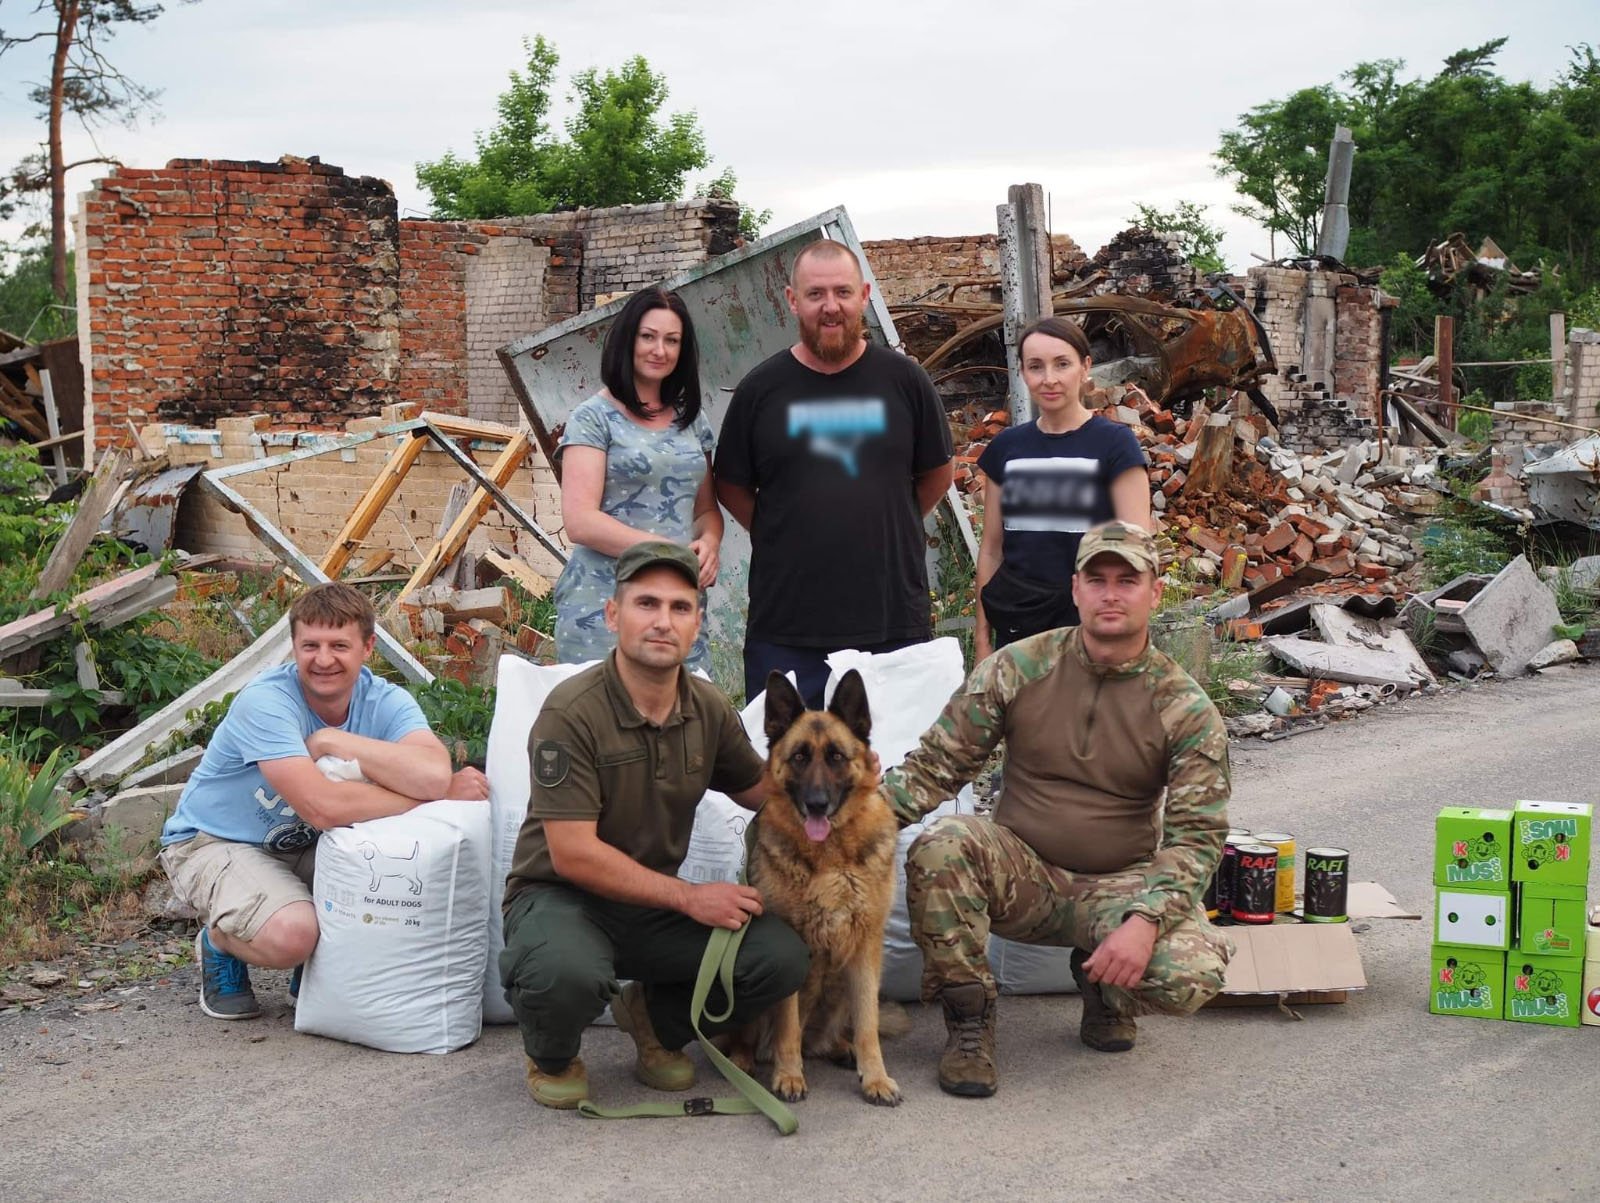 072022_Group Photo With Dog and Bags of Dog Food_©GGC_Food Bank - Pet Food Distribution - Kiev, Chernihiv, Sumy-1